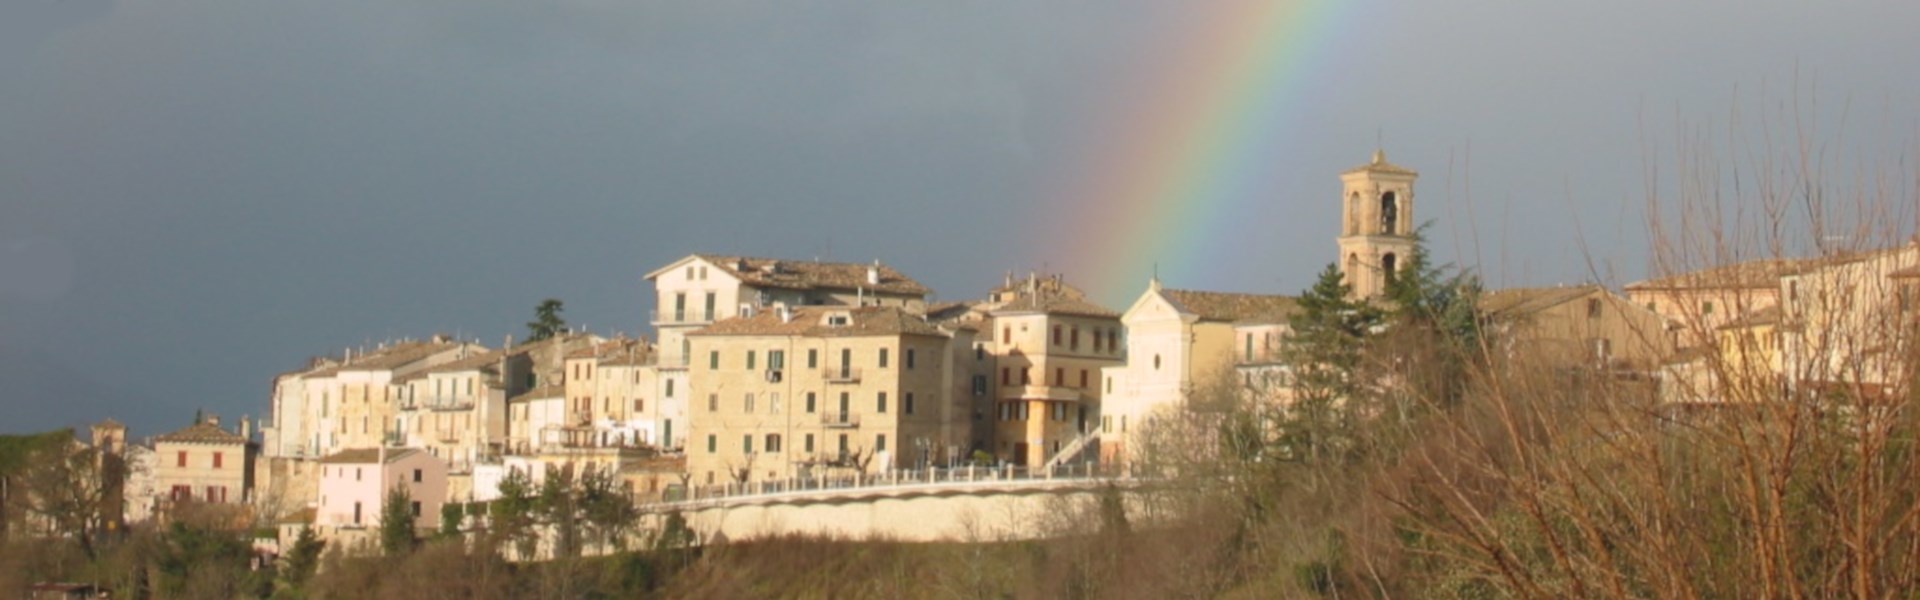 Maiolati Spontini - Panorama